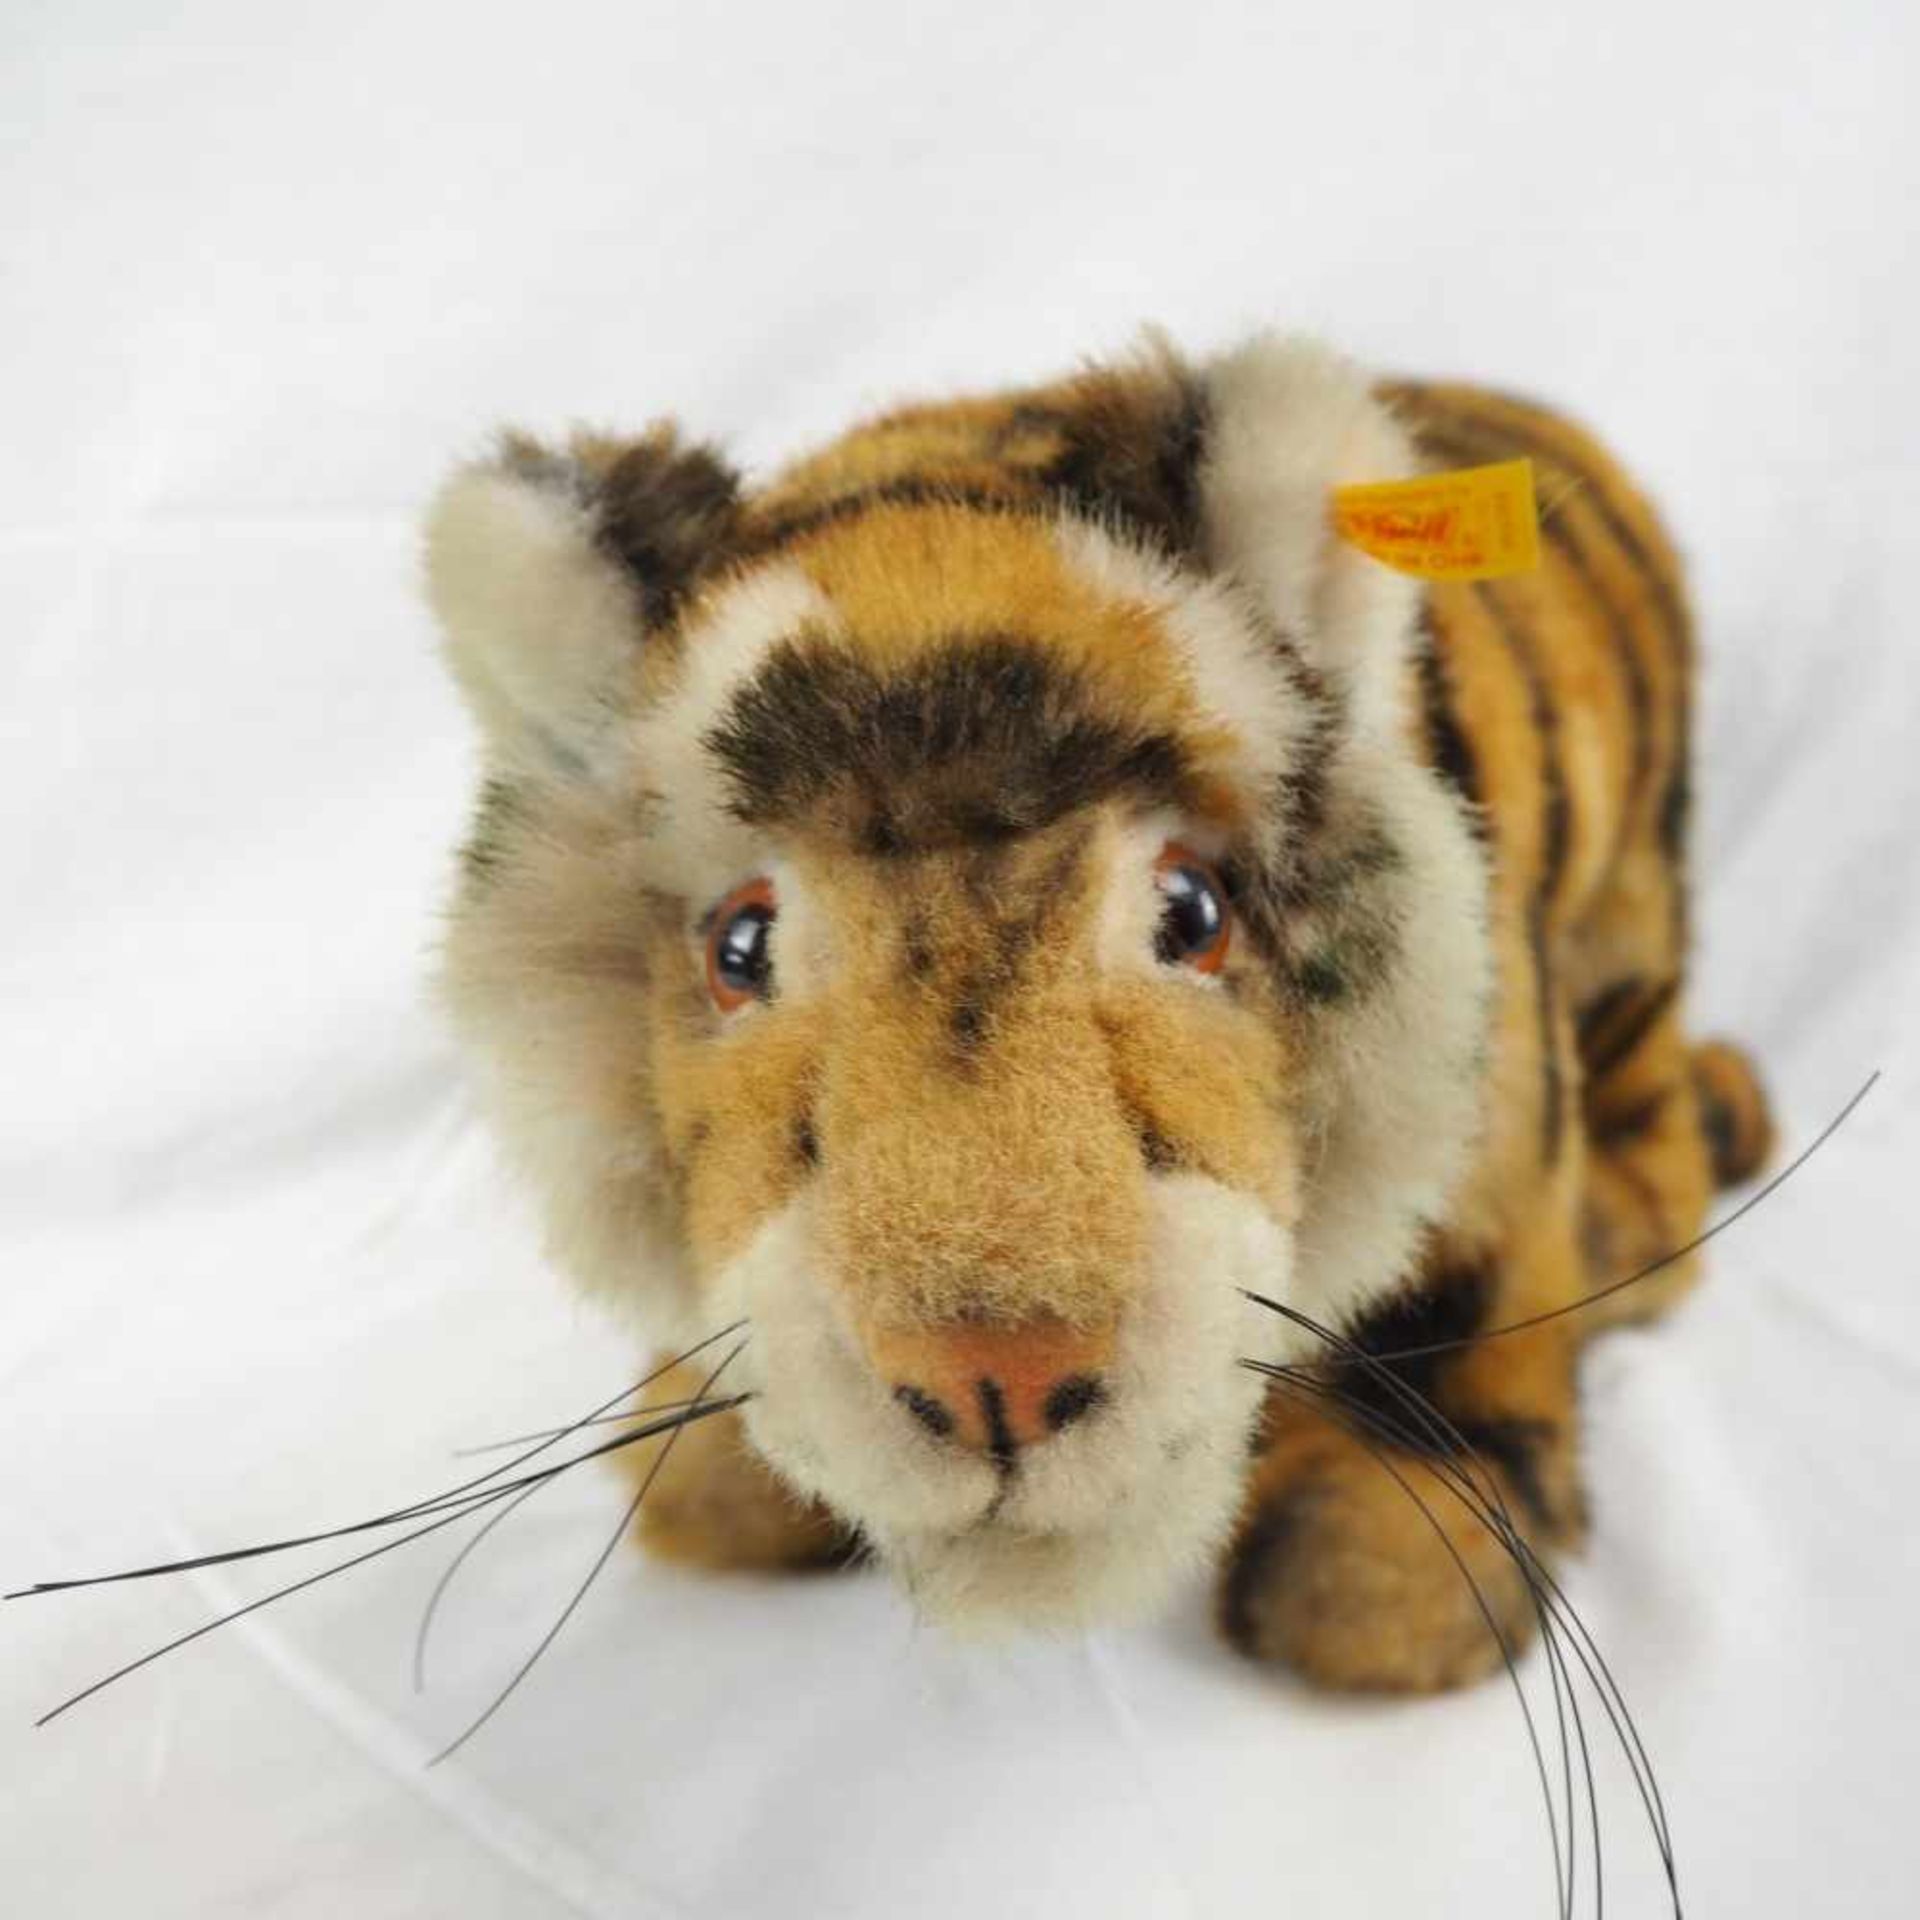 Tiger von "Steiff"Großer Tiger von Steiff, um 1995. In gutem Zustand. Fahne mit Knopf im linken Ohr. - Bild 2 aus 3